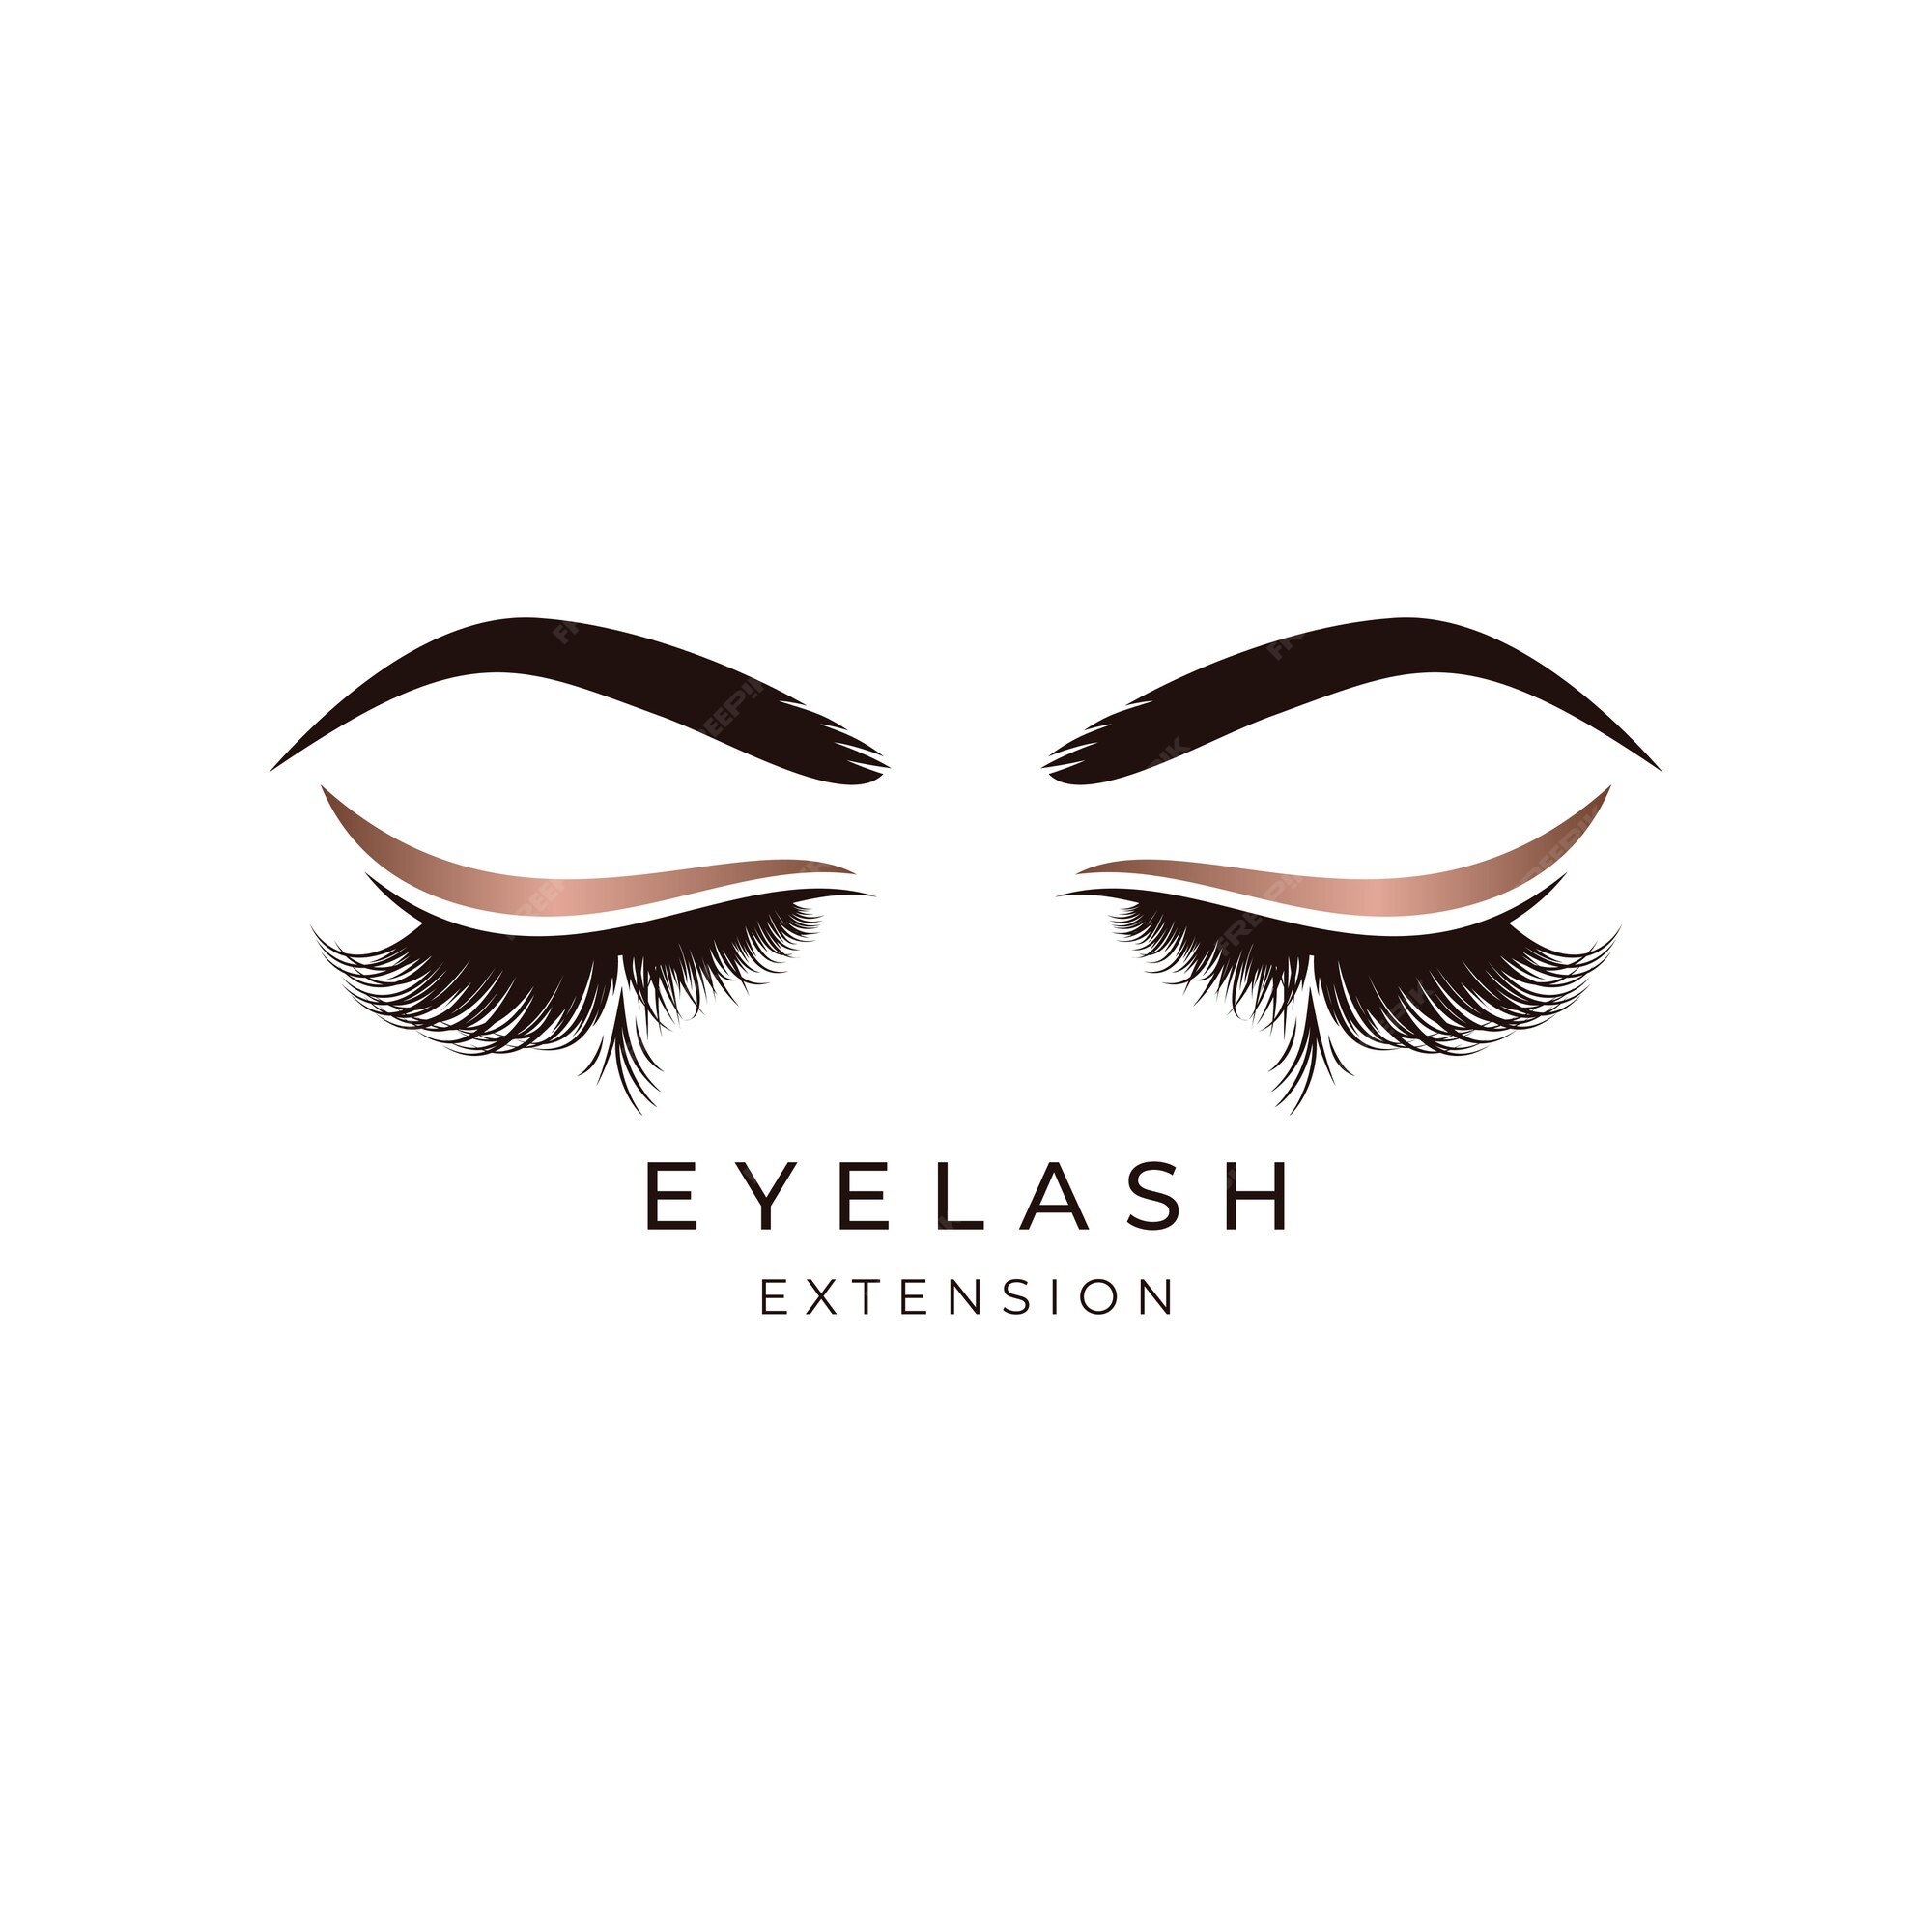 Eyelash extensions Vectors